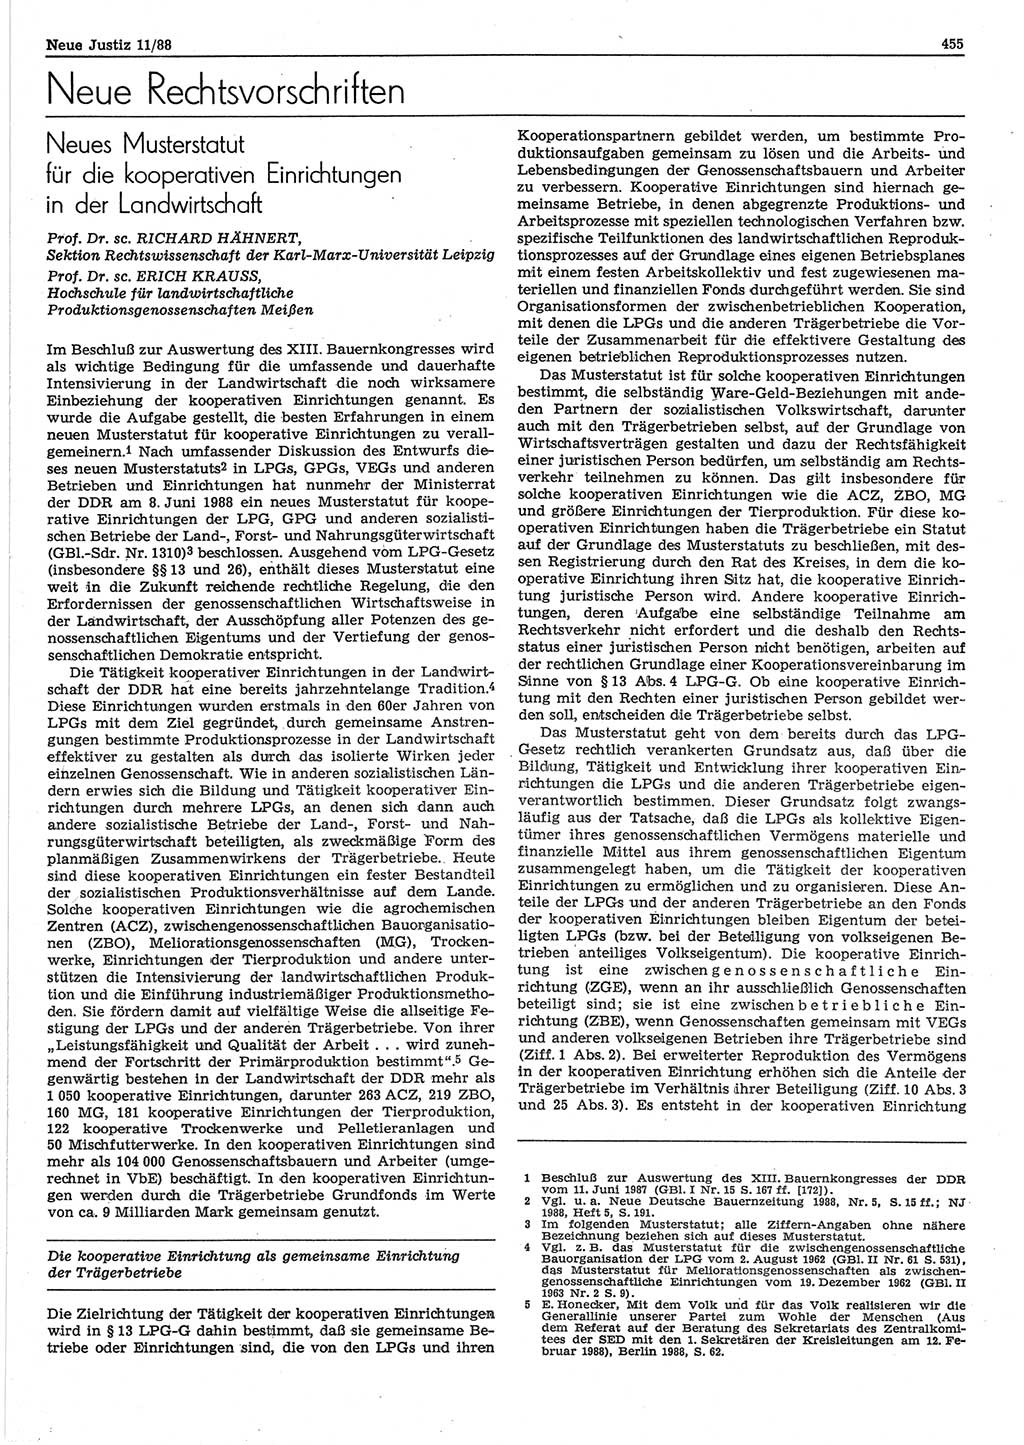 Neue Justiz (NJ), Zeitschrift für sozialistisches Recht und Gesetzlichkeit [Deutsche Demokratische Republik (DDR)], 42. Jahrgang 1988, Seite 455 (NJ DDR 1988, S. 455)